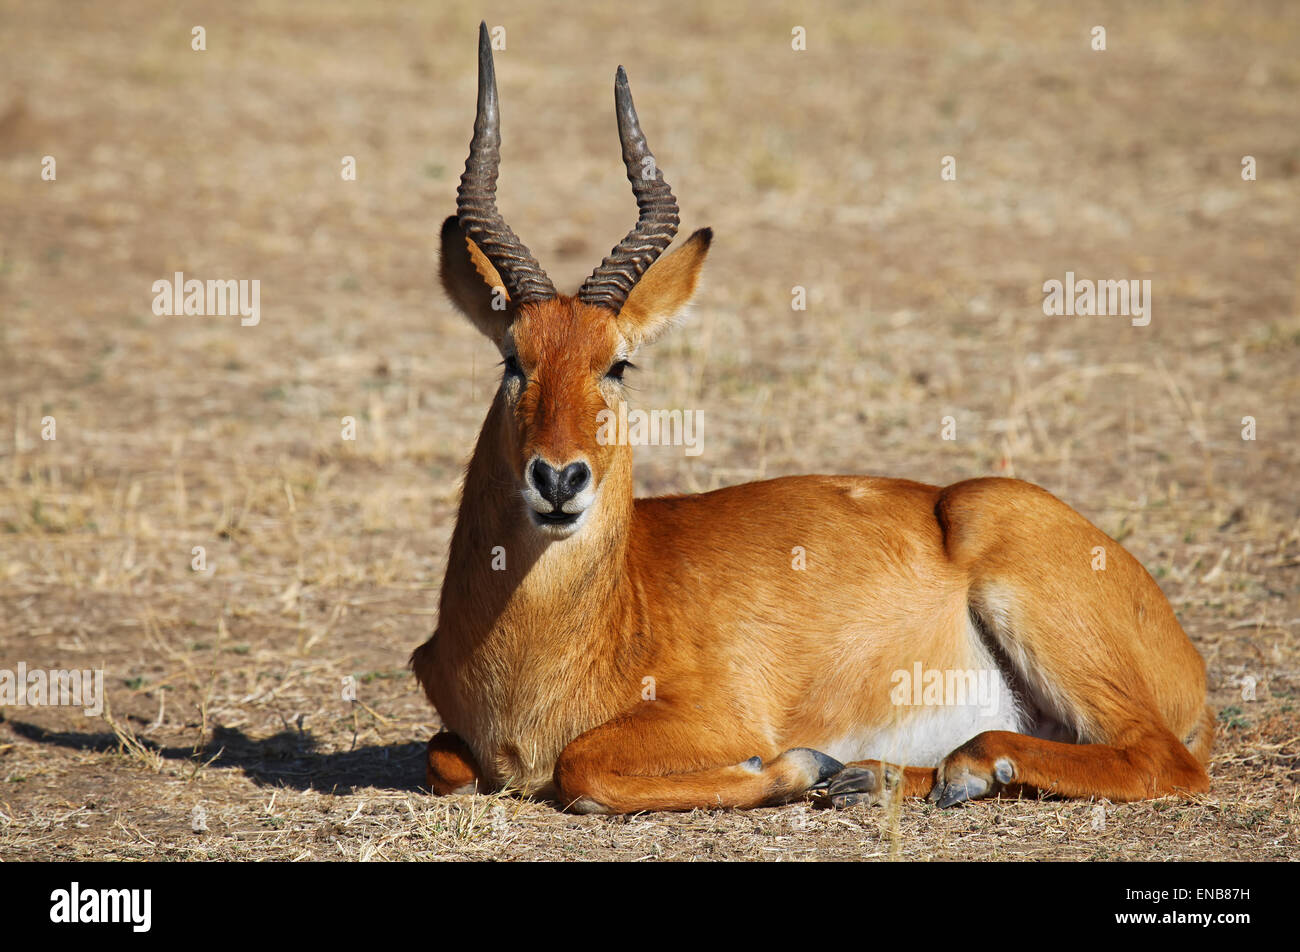 Kobus vardonii, puku, South Luangwa Nationalpark, Zambia Stock Photo